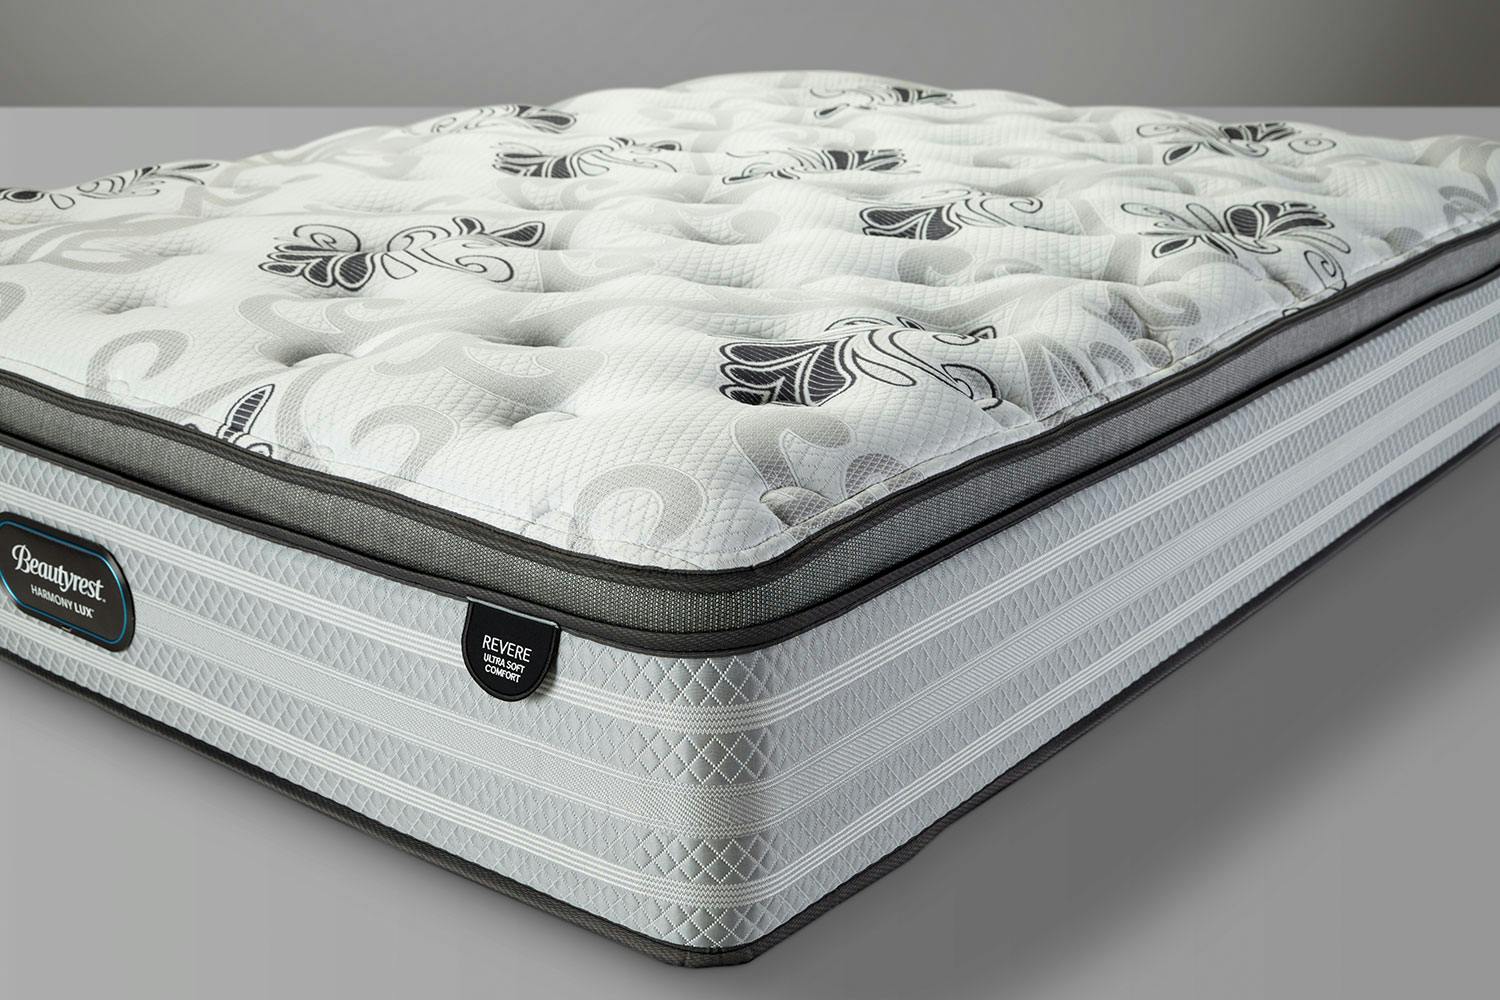 beautyrest franklin heights extra firm king mattress